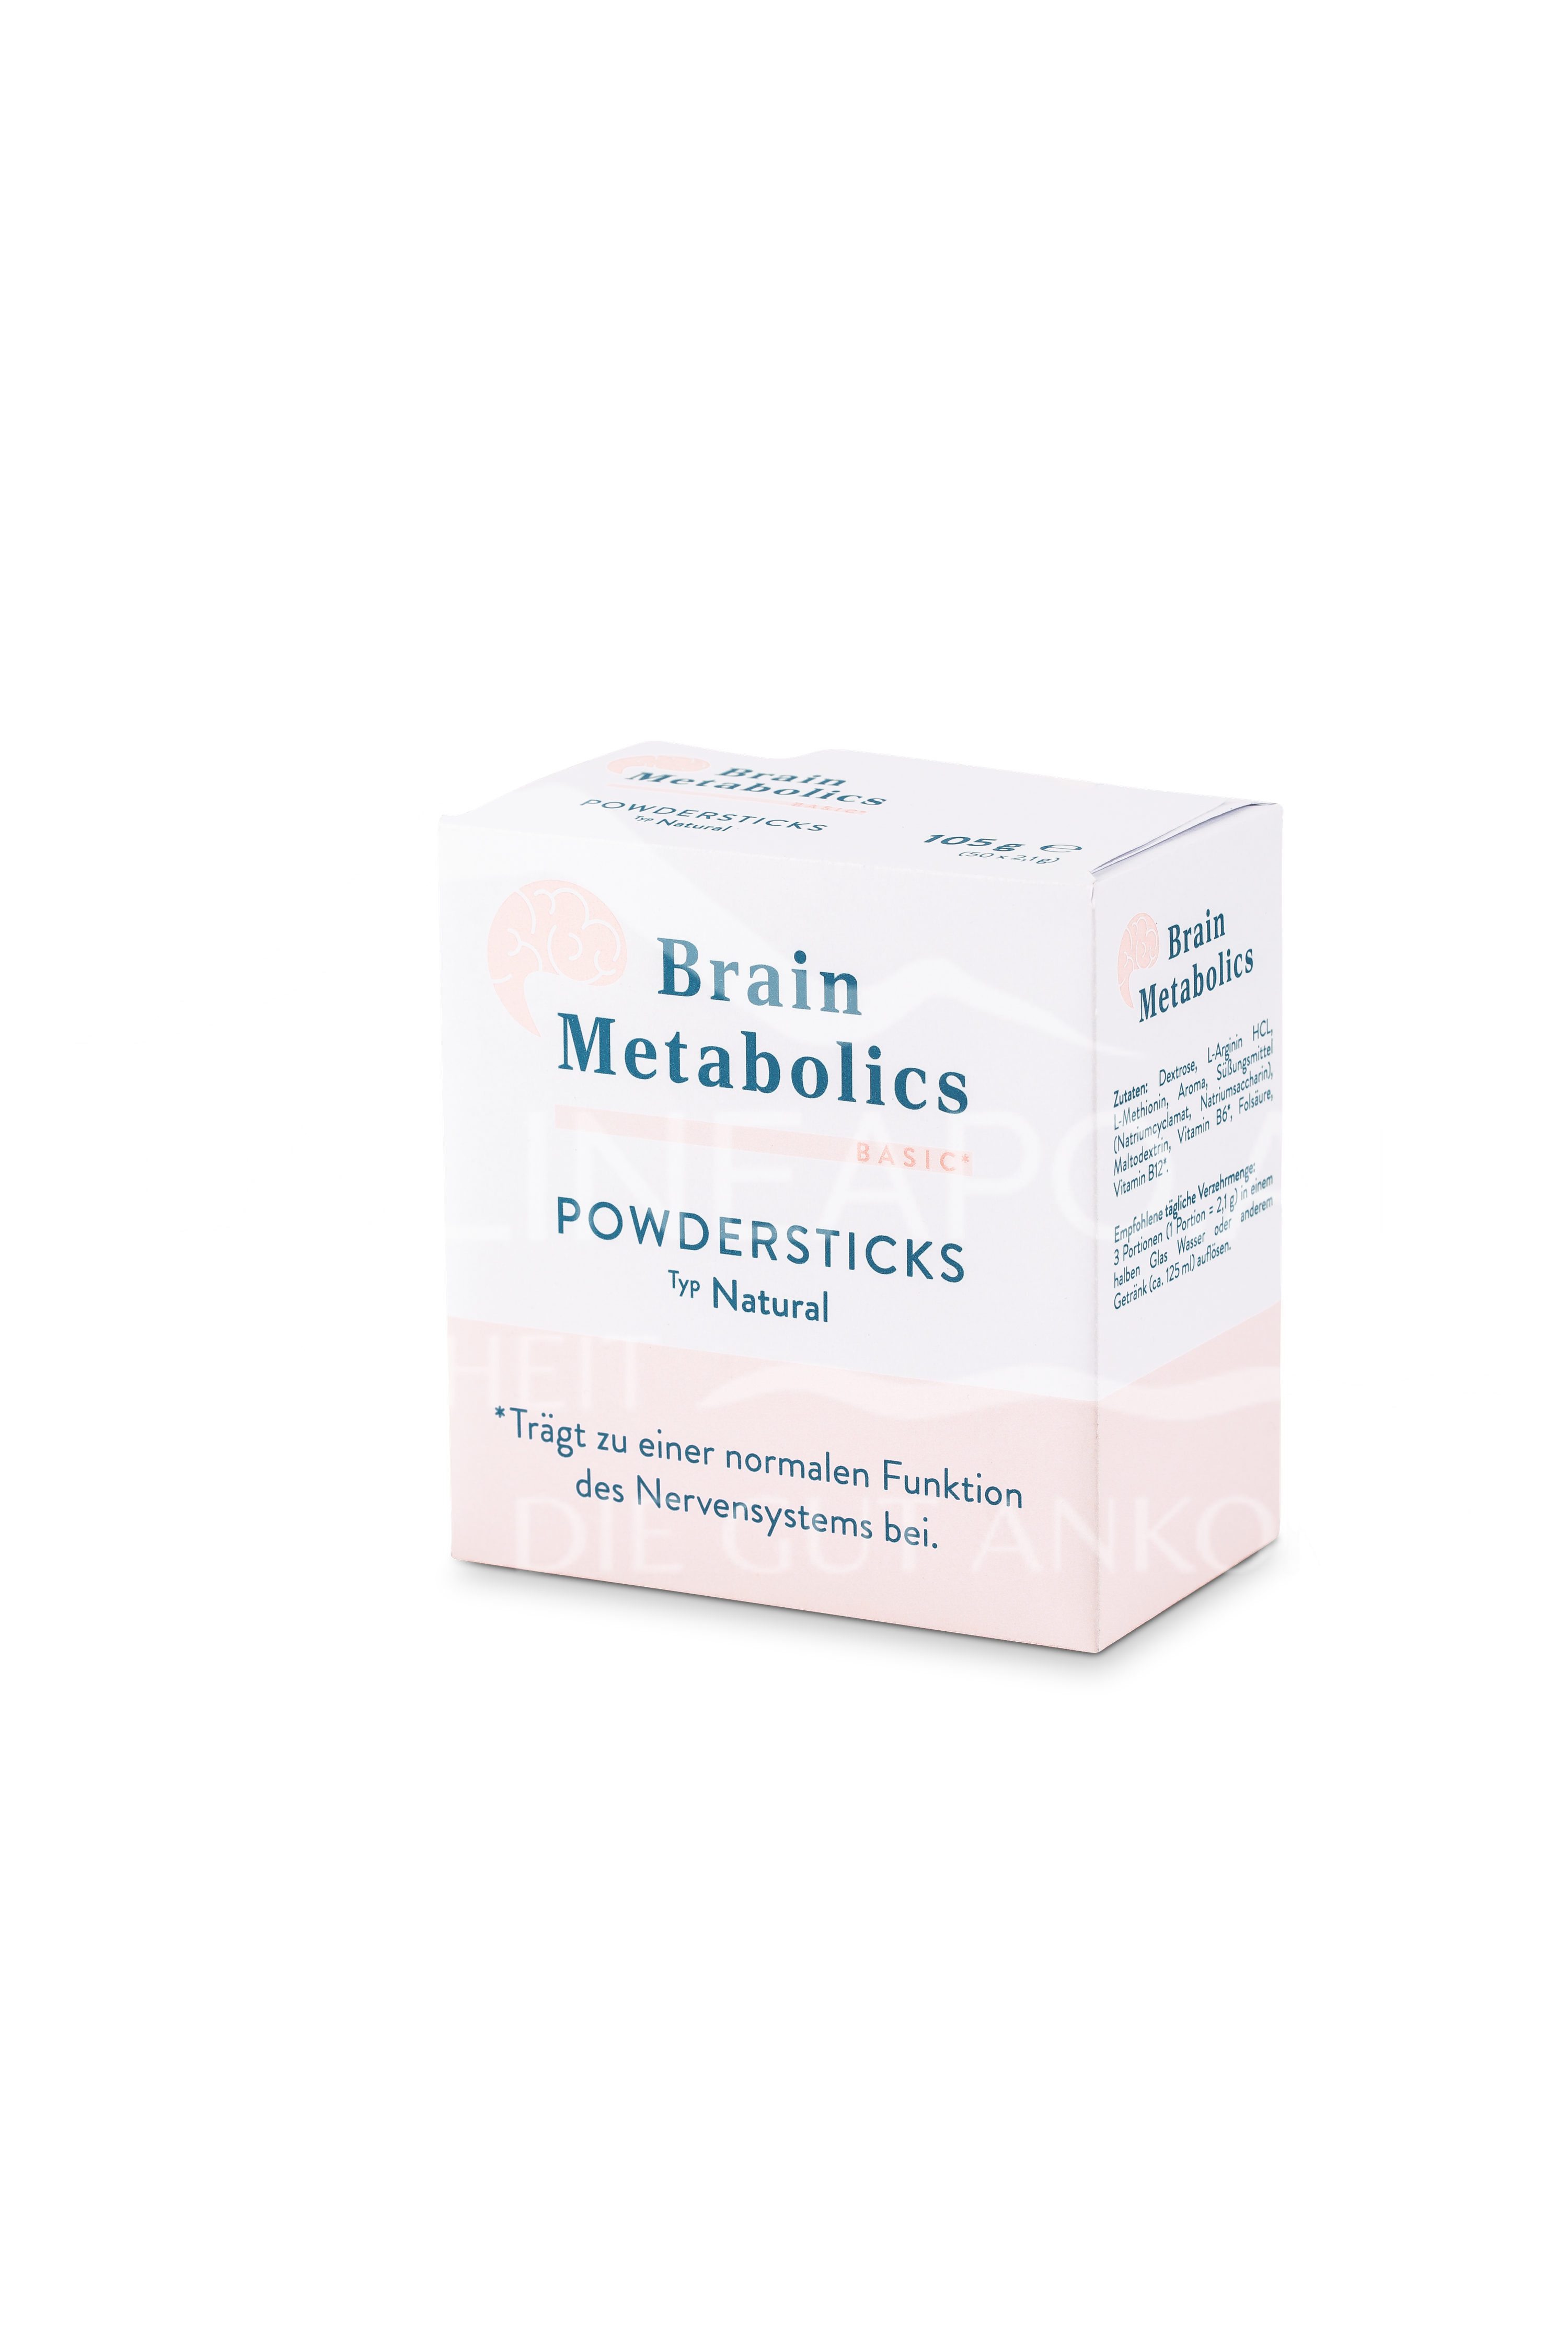 Brain Metabolics Basic Powdersticks Typ Natural